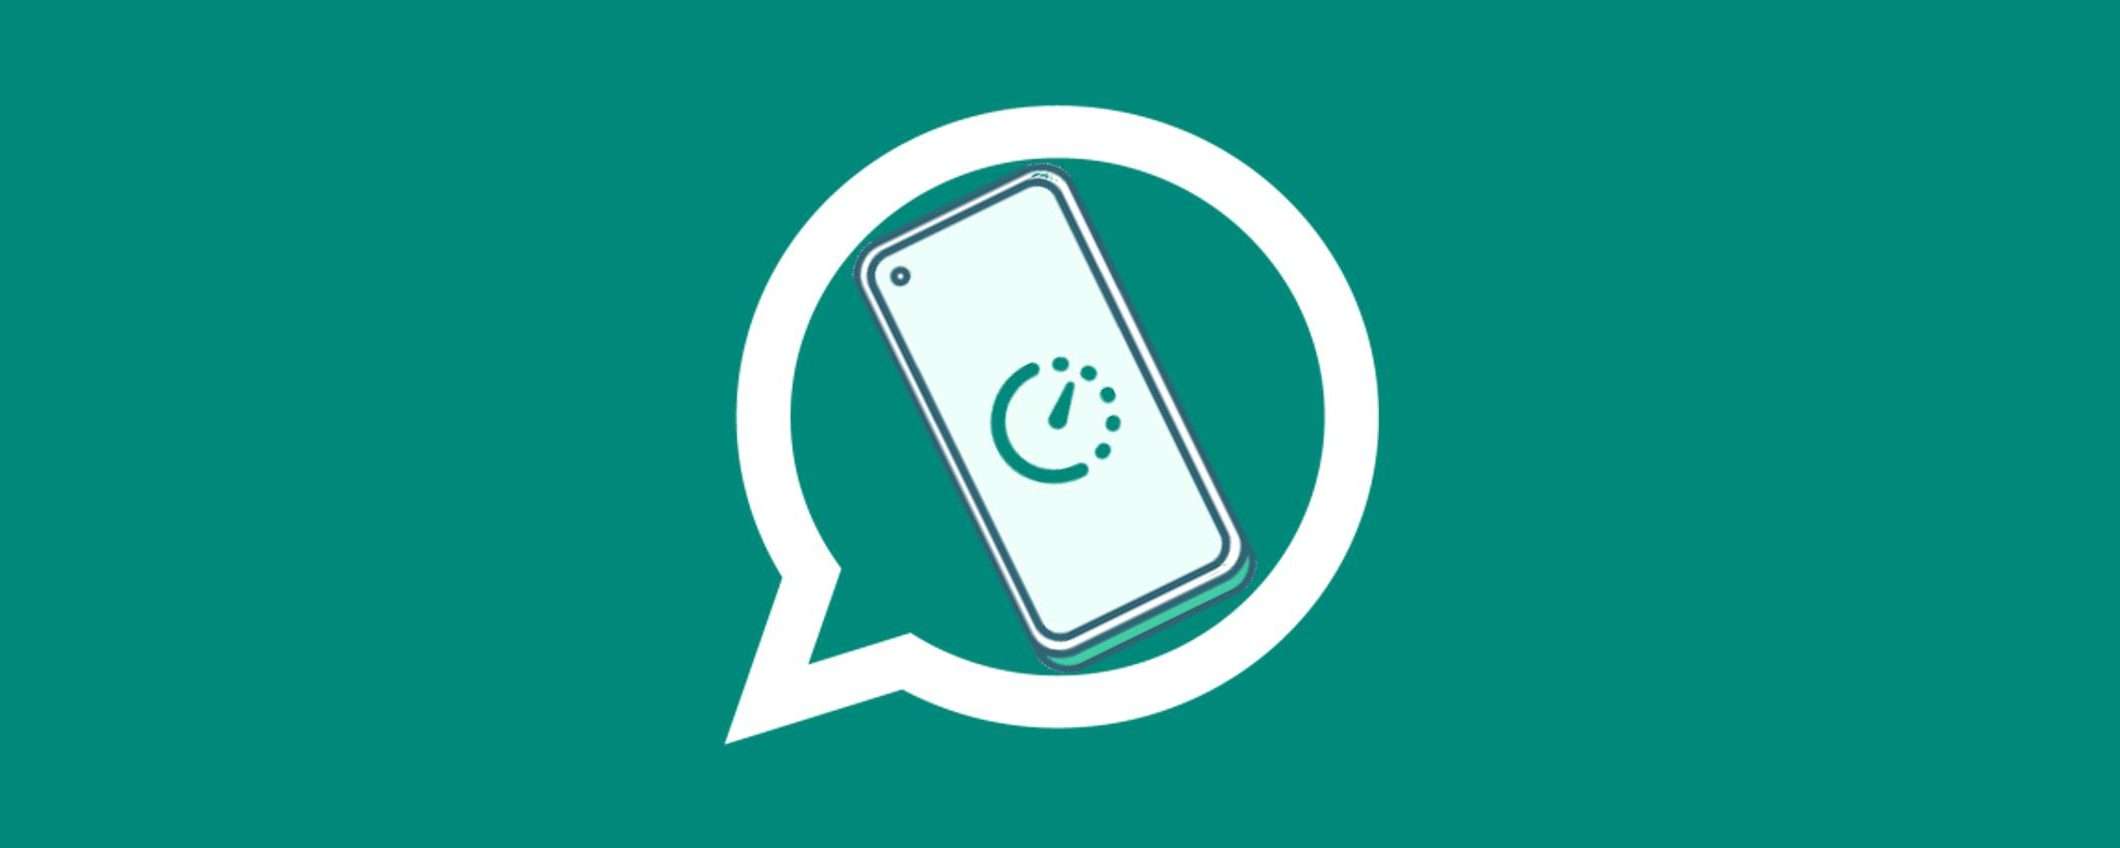 WhatsApp: c'è un importante aggiornamento per i messaggi effimeri